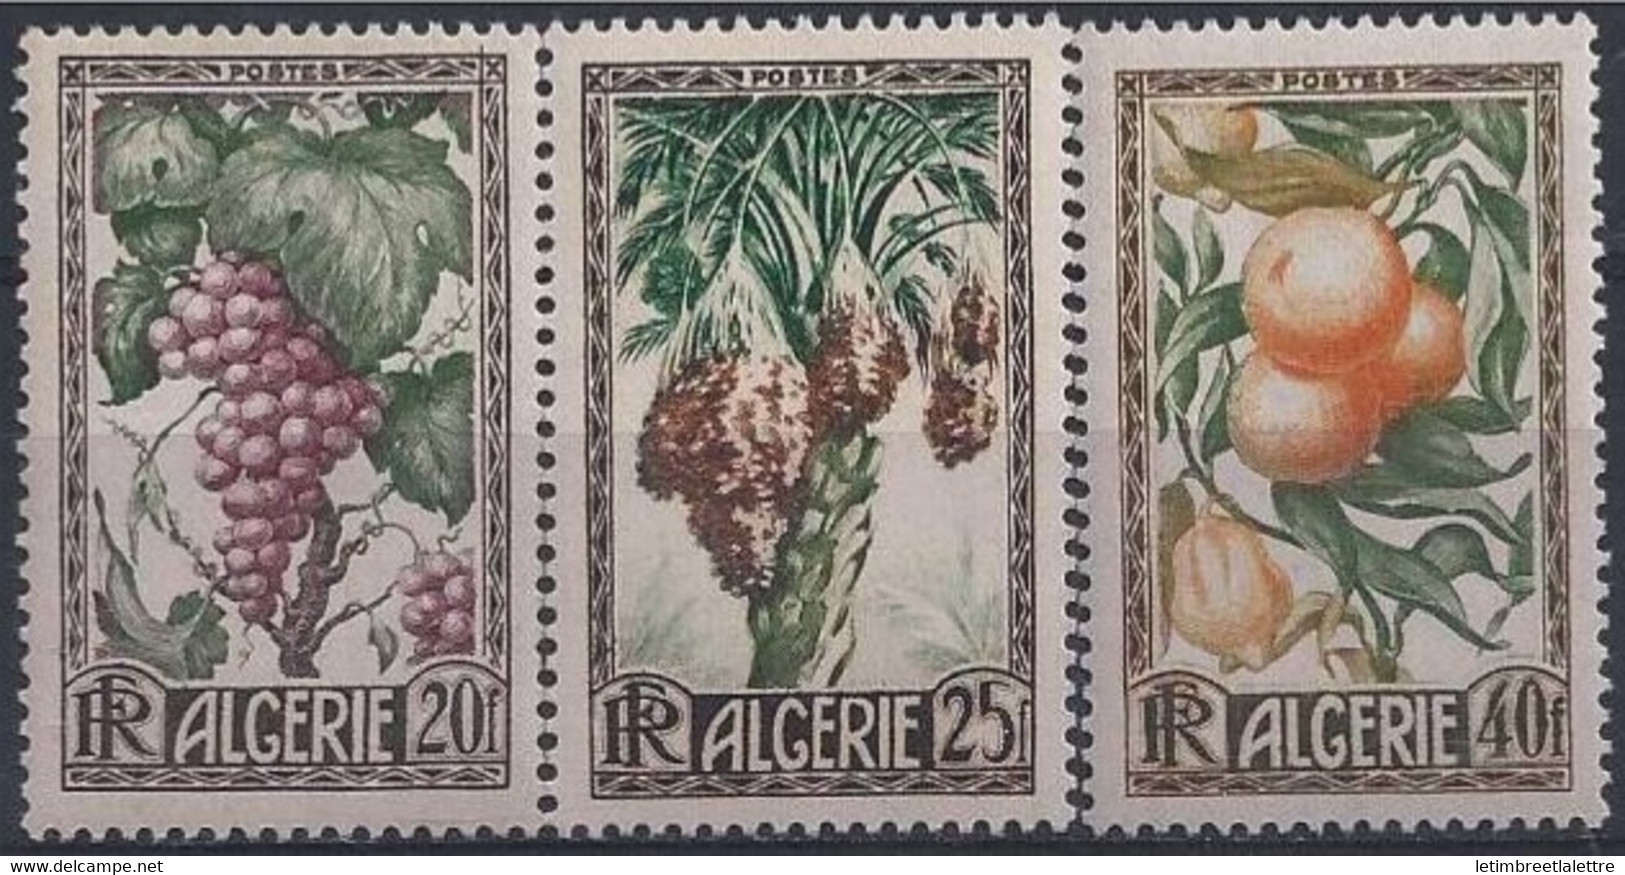 Algérie - YT N° 279 à 281 ** - Neuf Sans Charnière - 1950 - Neufs